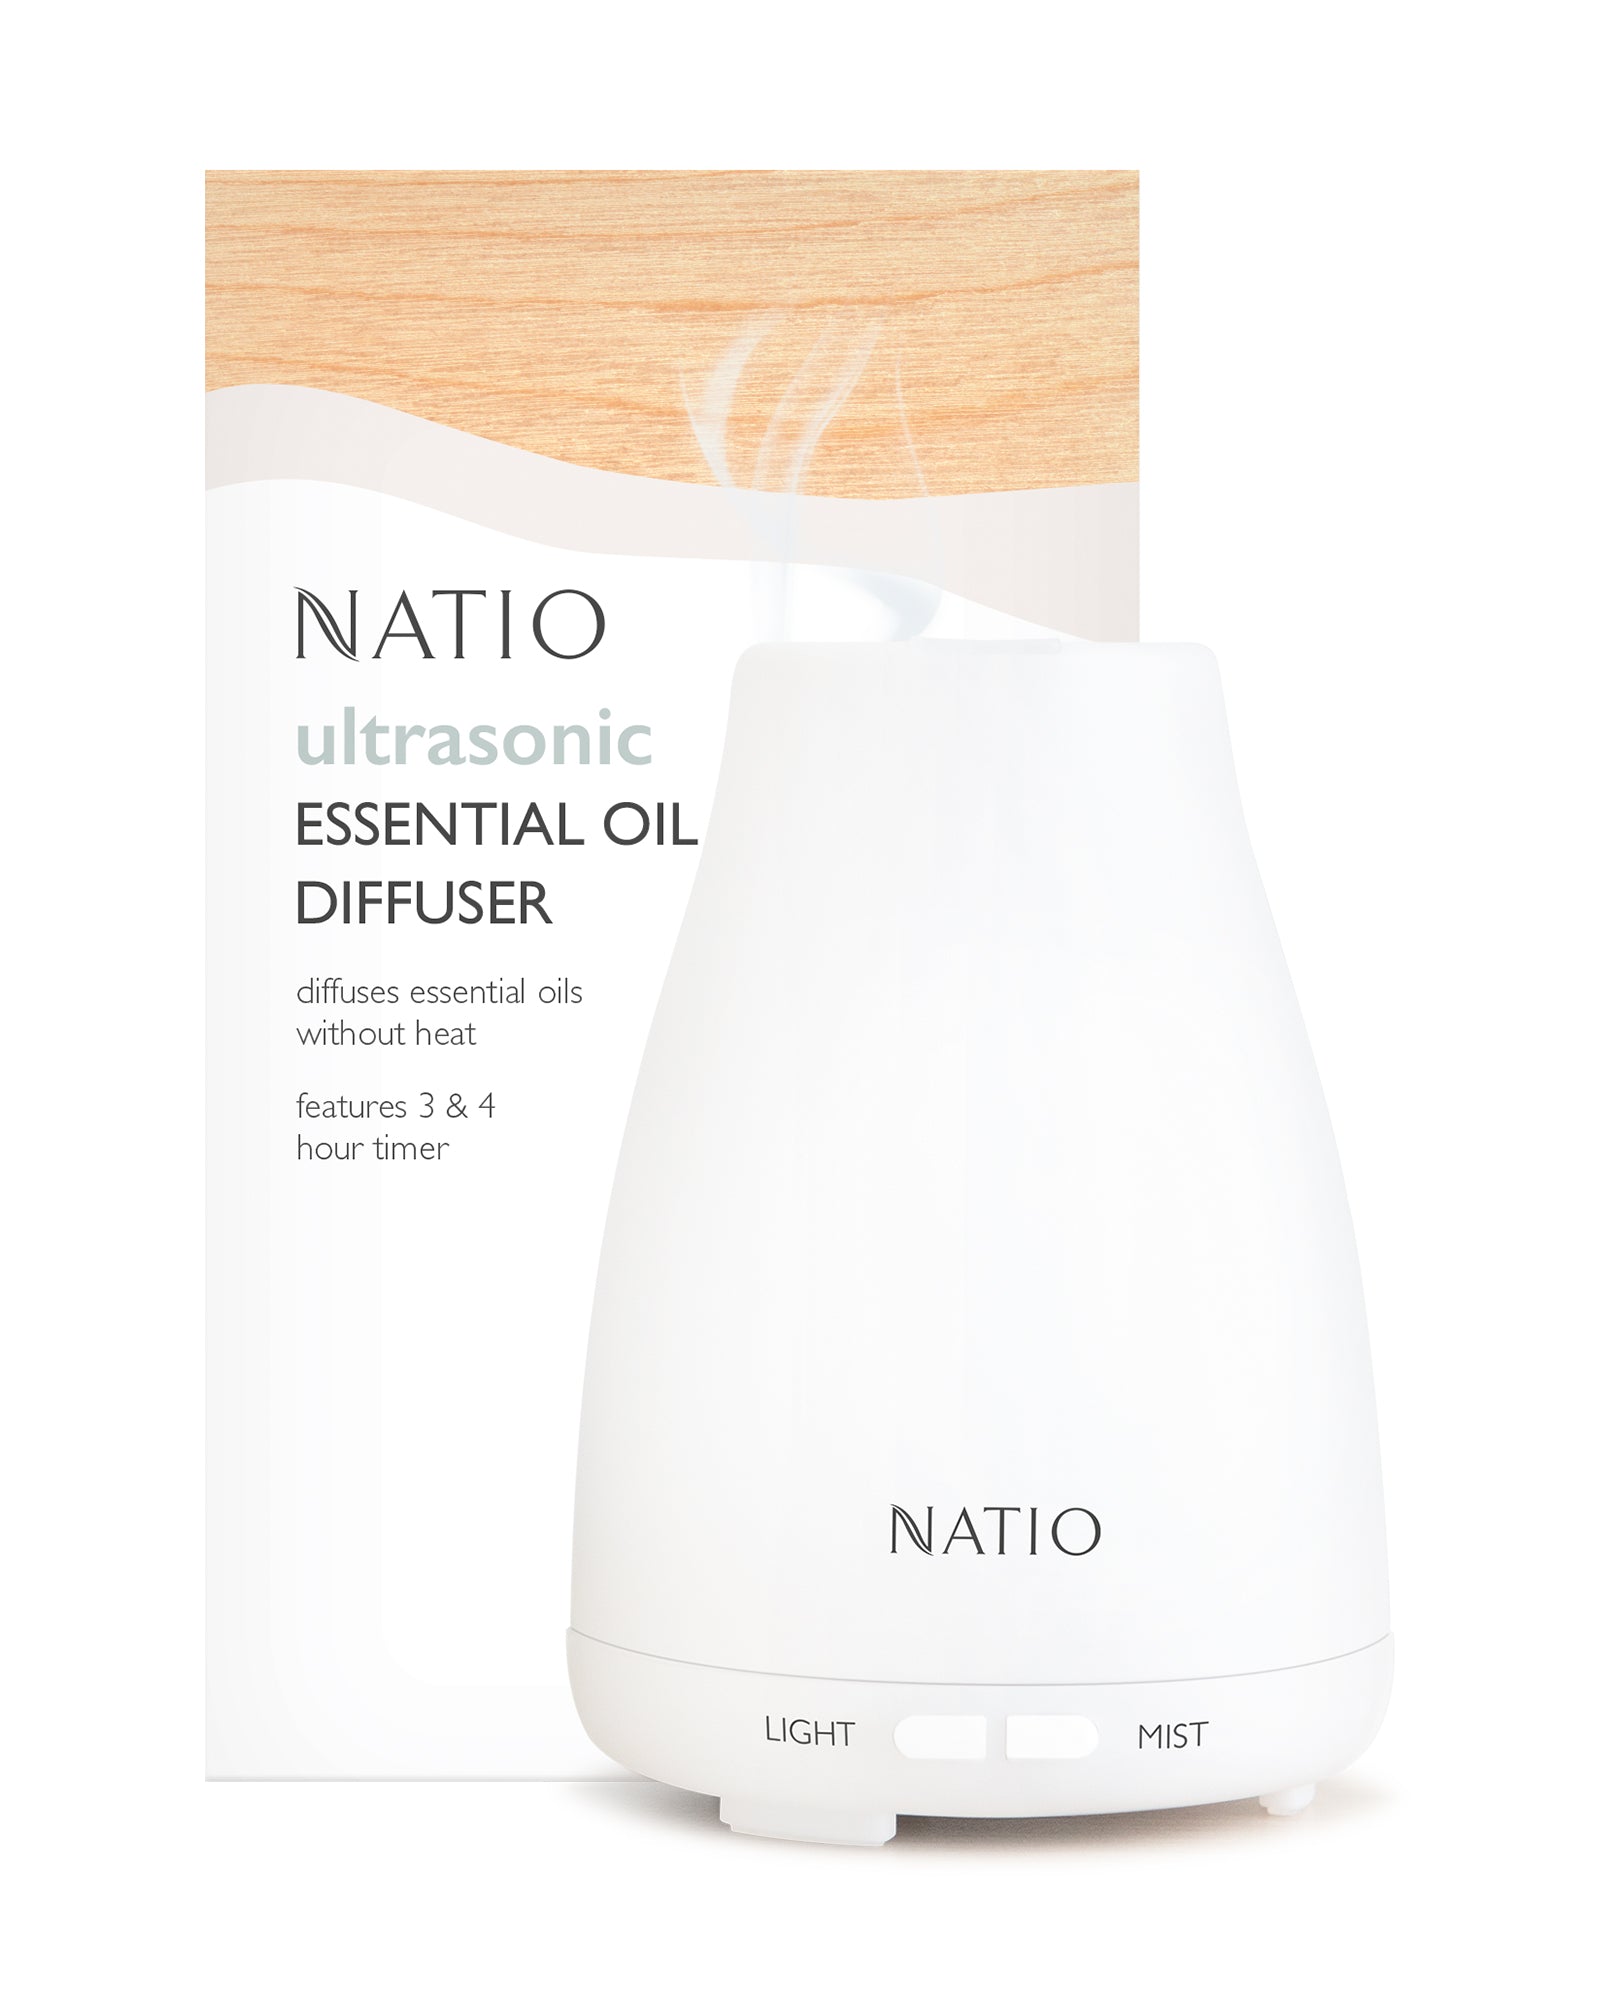 Ultrasonic Essential Oil Diffuser – Natio